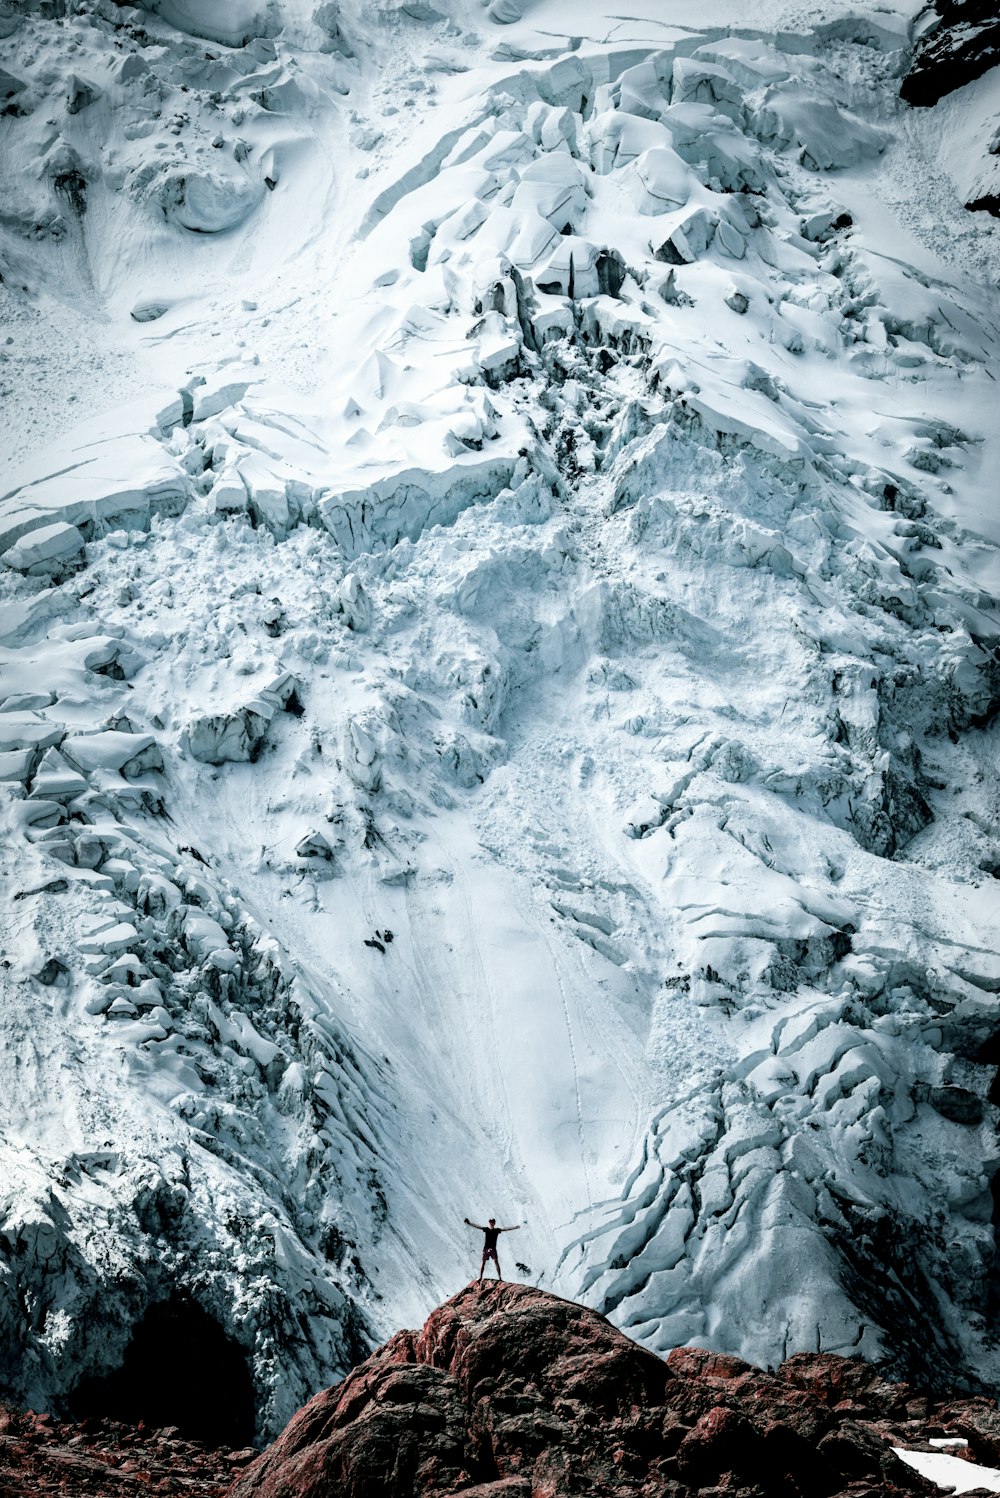 Person, die auf der Felsfront eines schneebedeckten Berges in der Naturfotografie steht